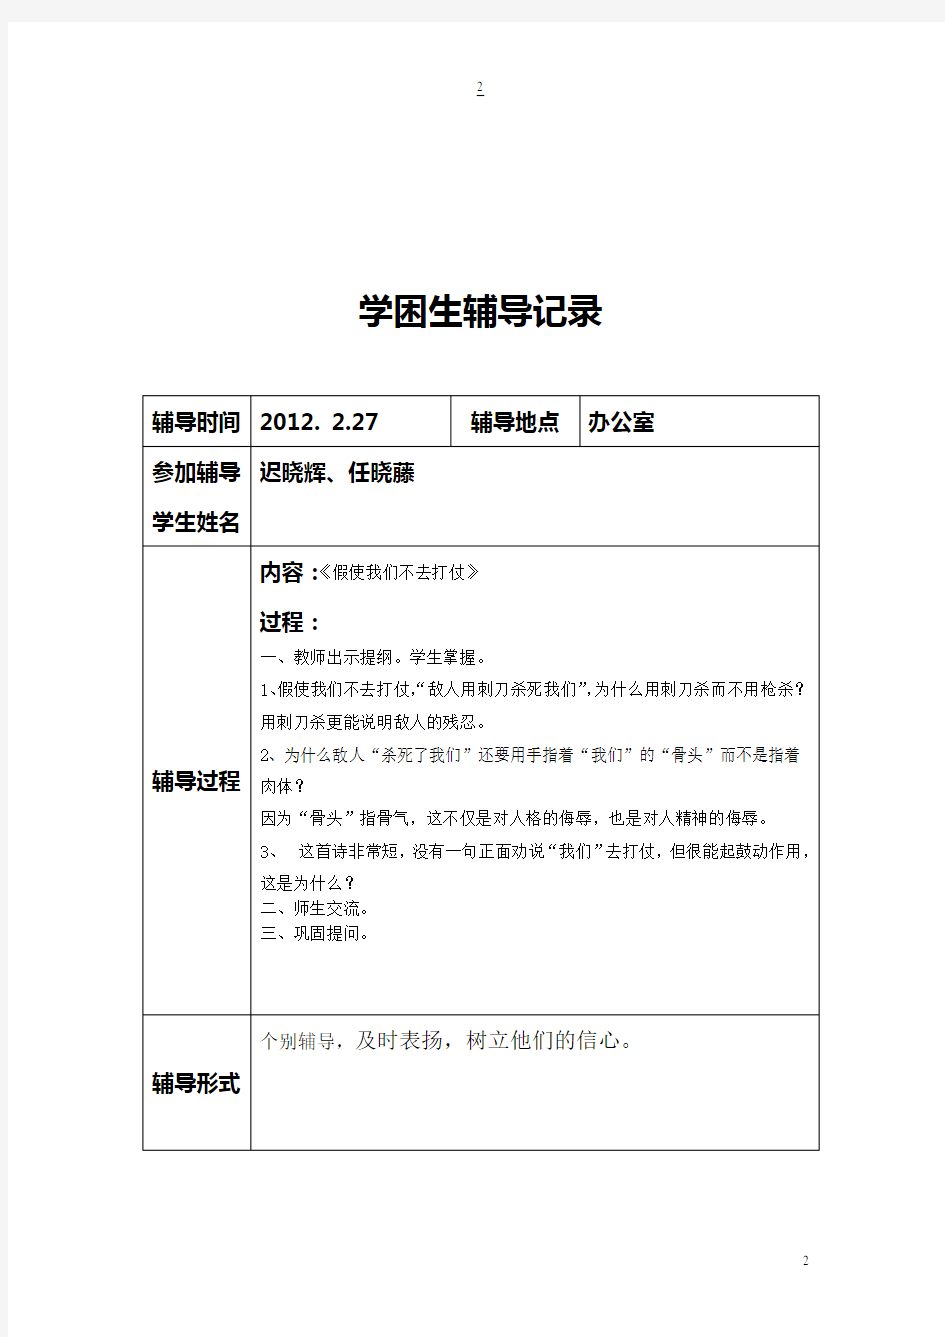 初中语文学困生辅导记录表